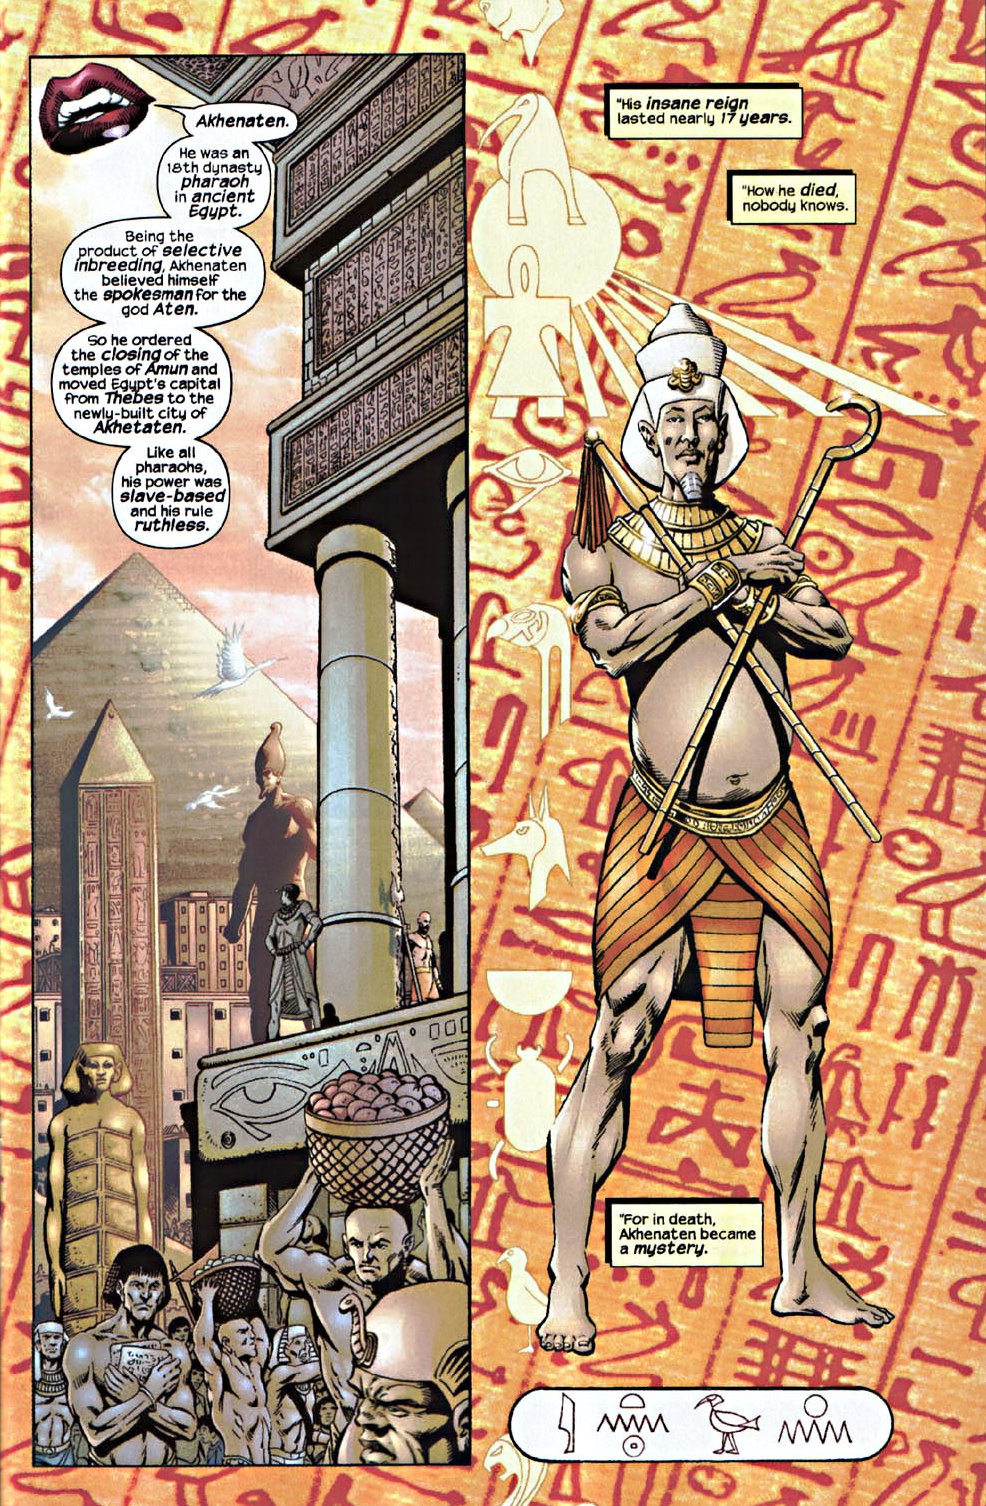 [Akhenaton+Thoth+Human.bmp]